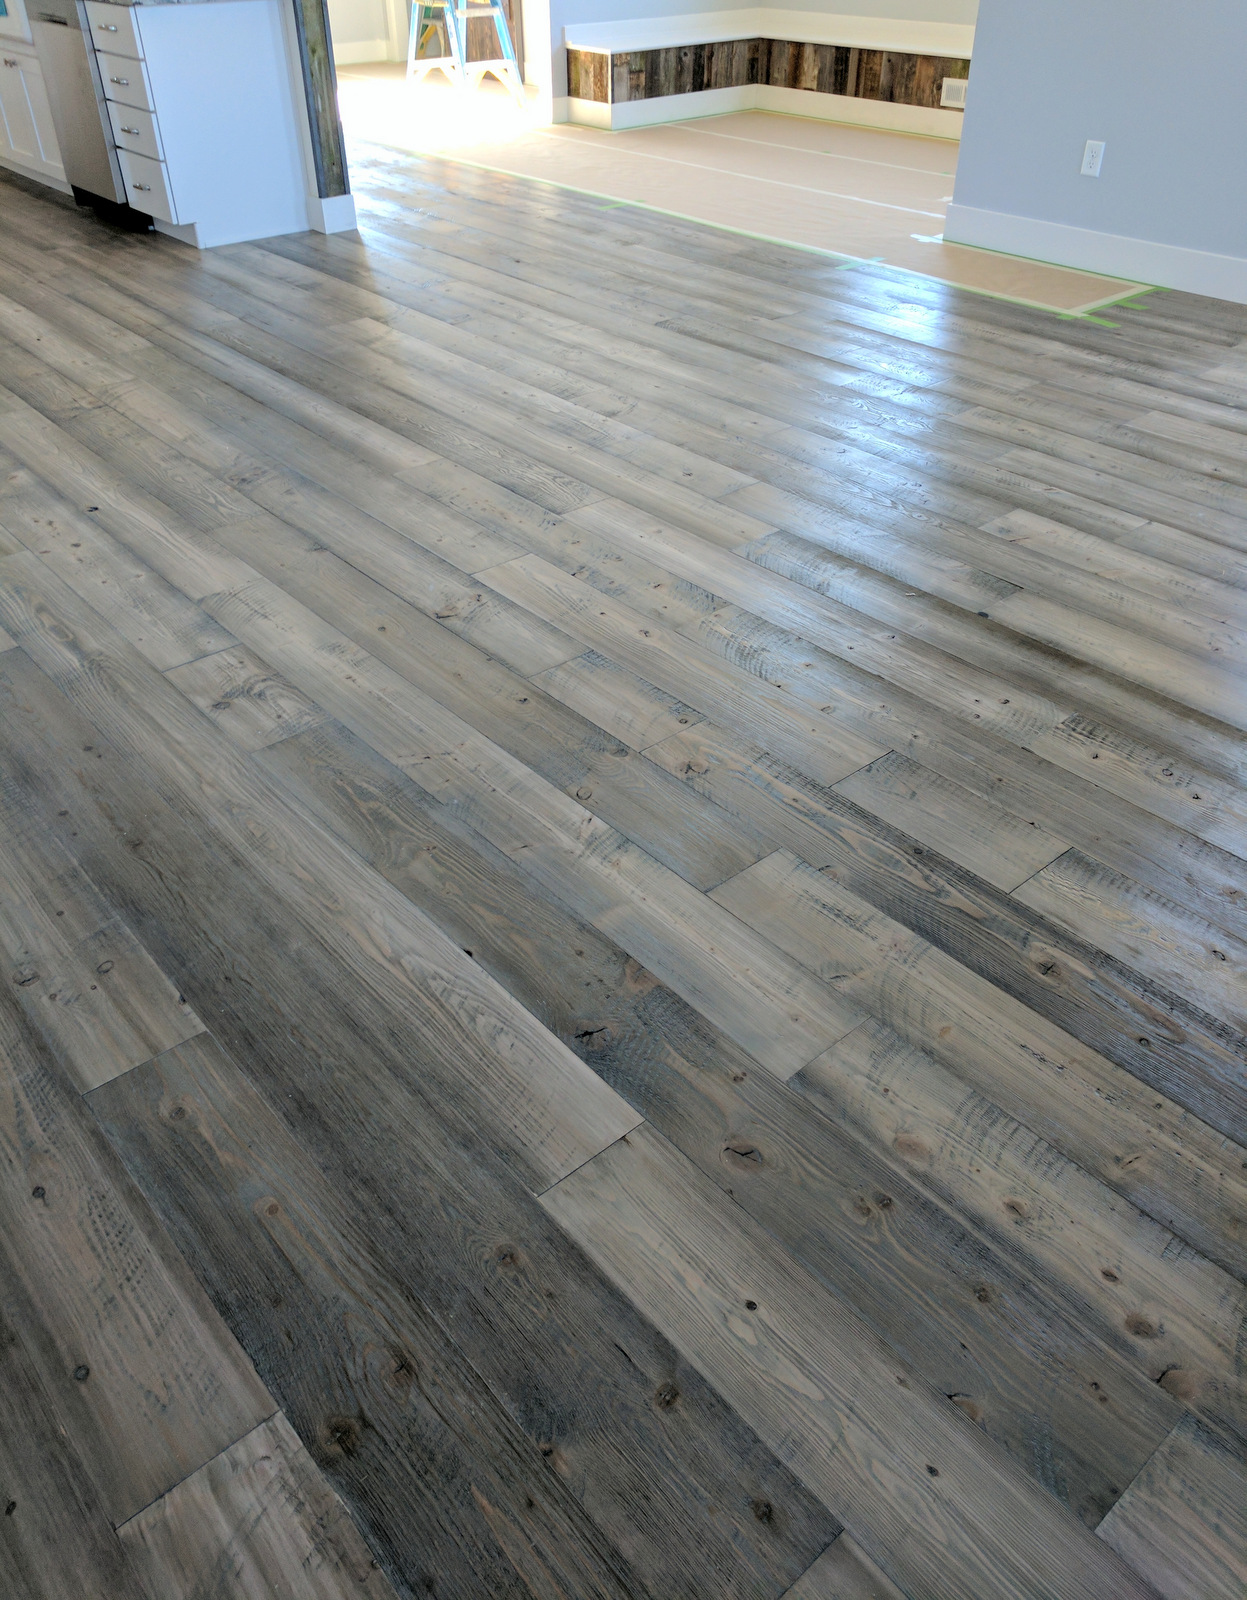 Douglas fir flooring